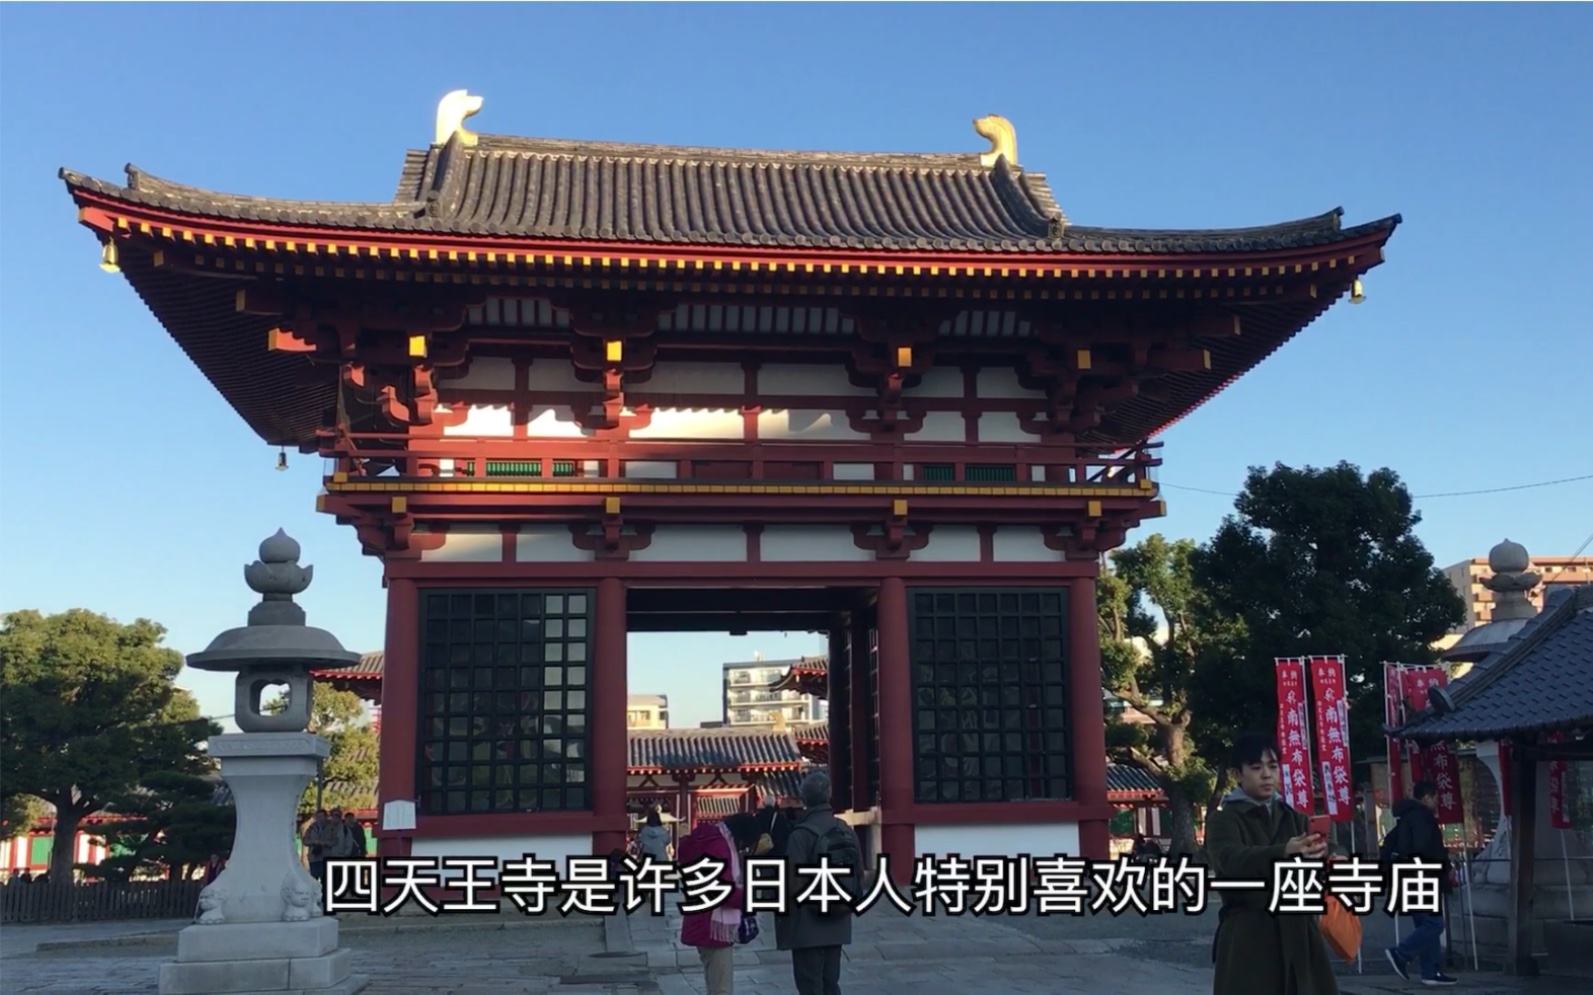 日本关西大阪旅游最古老的官家寺院四天王寺仿中国寺院格局而建 哔哩哔哩 つロ干杯 Bilibili